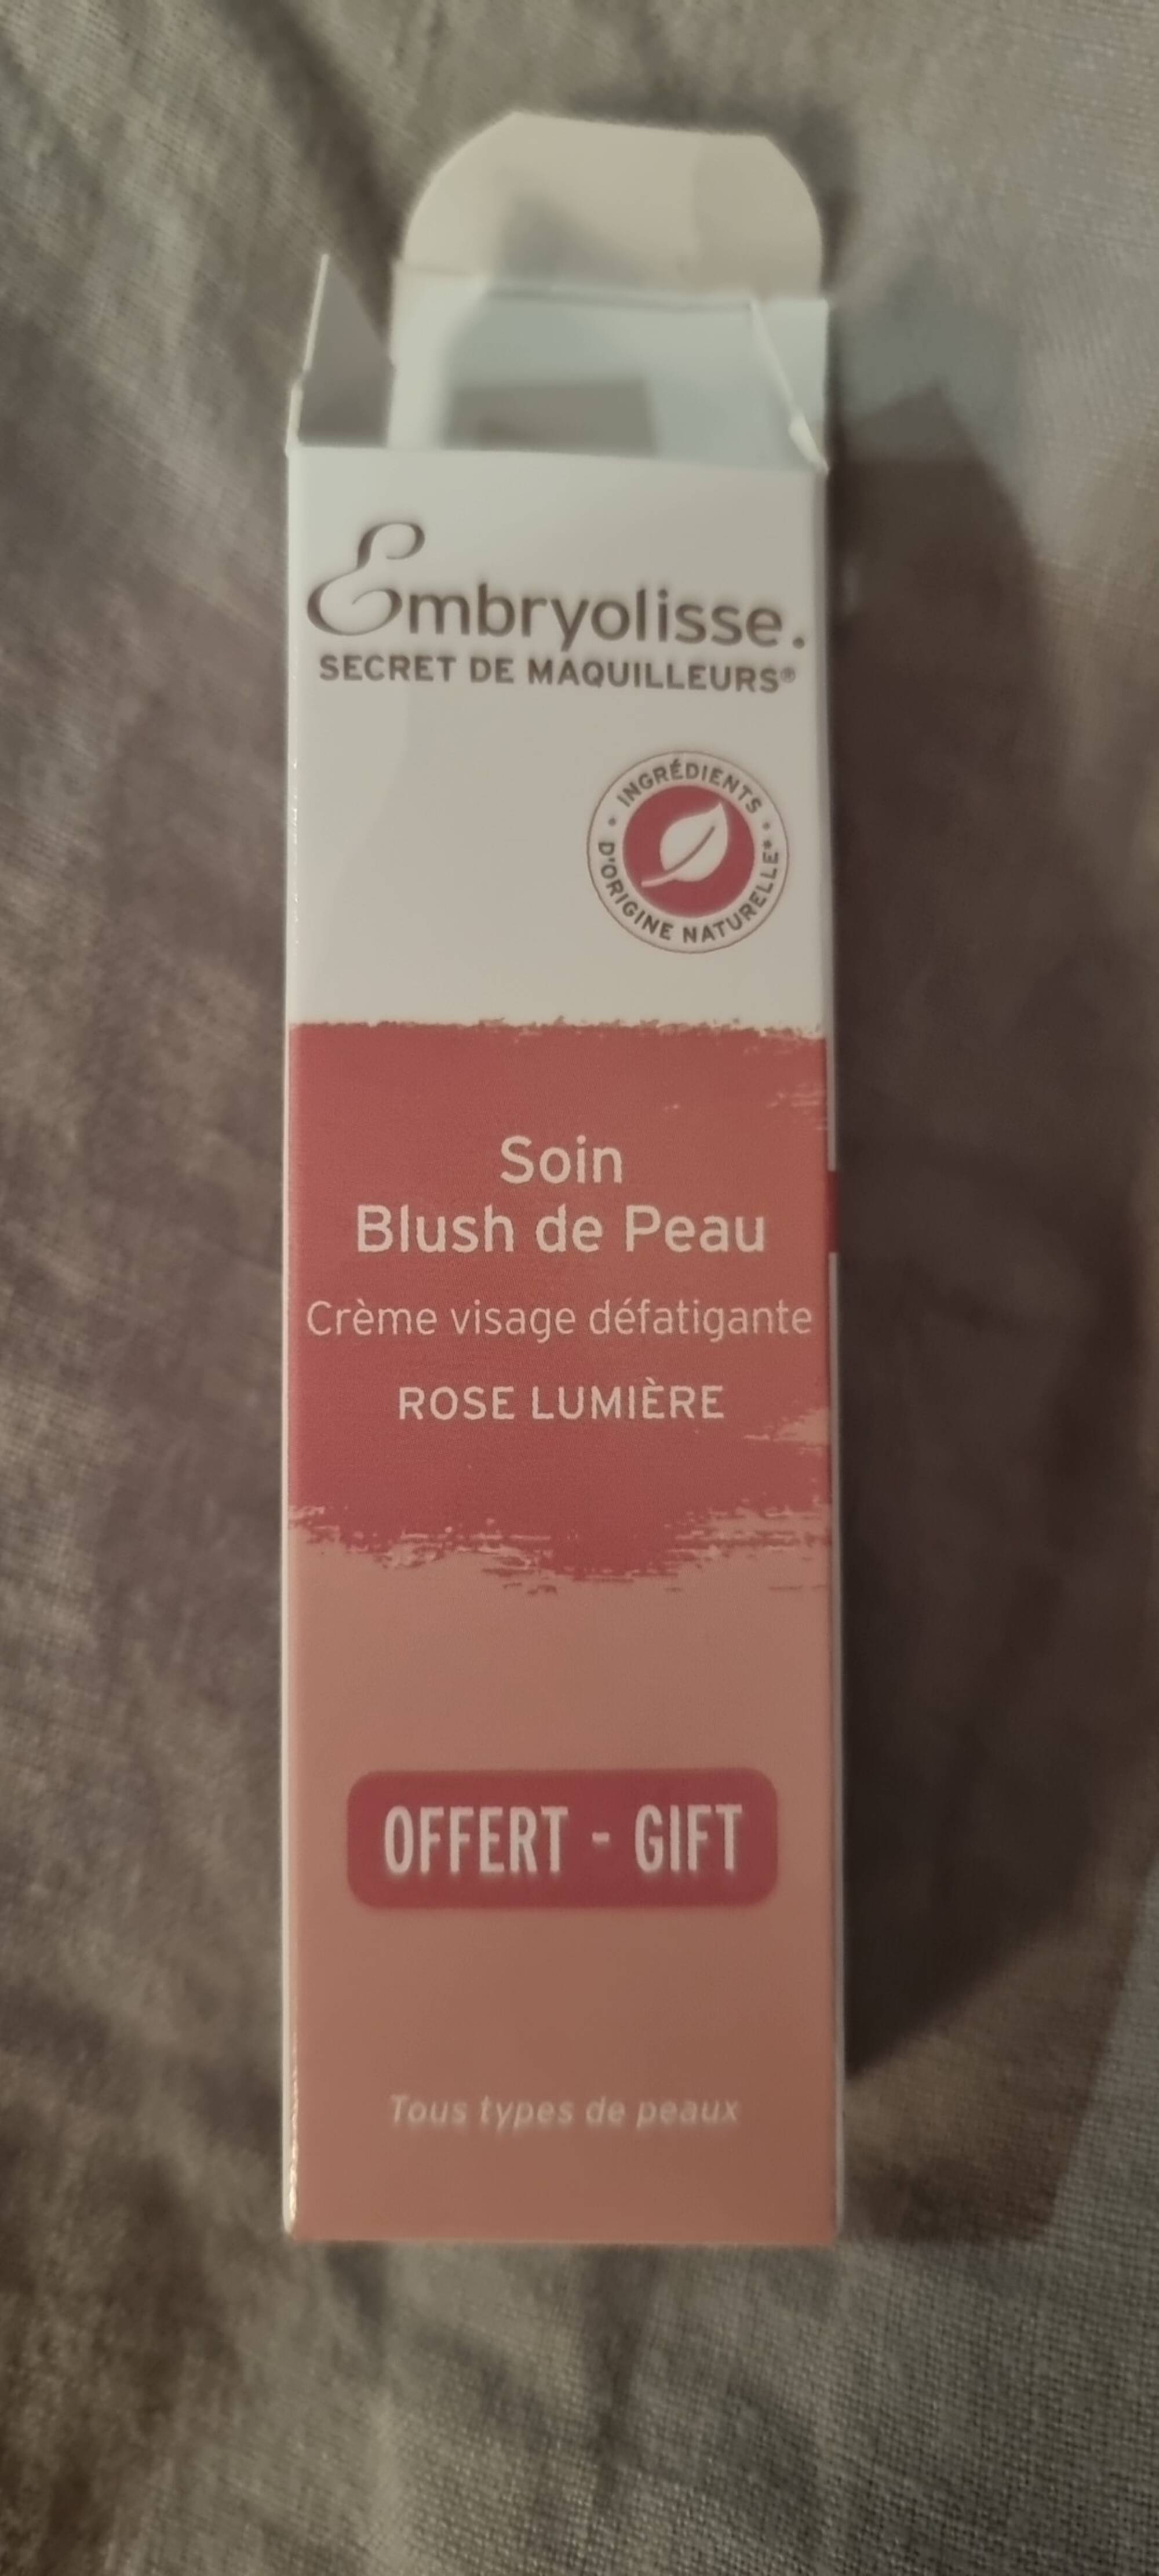 EMBRYOLISSE - Secret de maquilleurs - Crème visage défatigante Rose lumiere